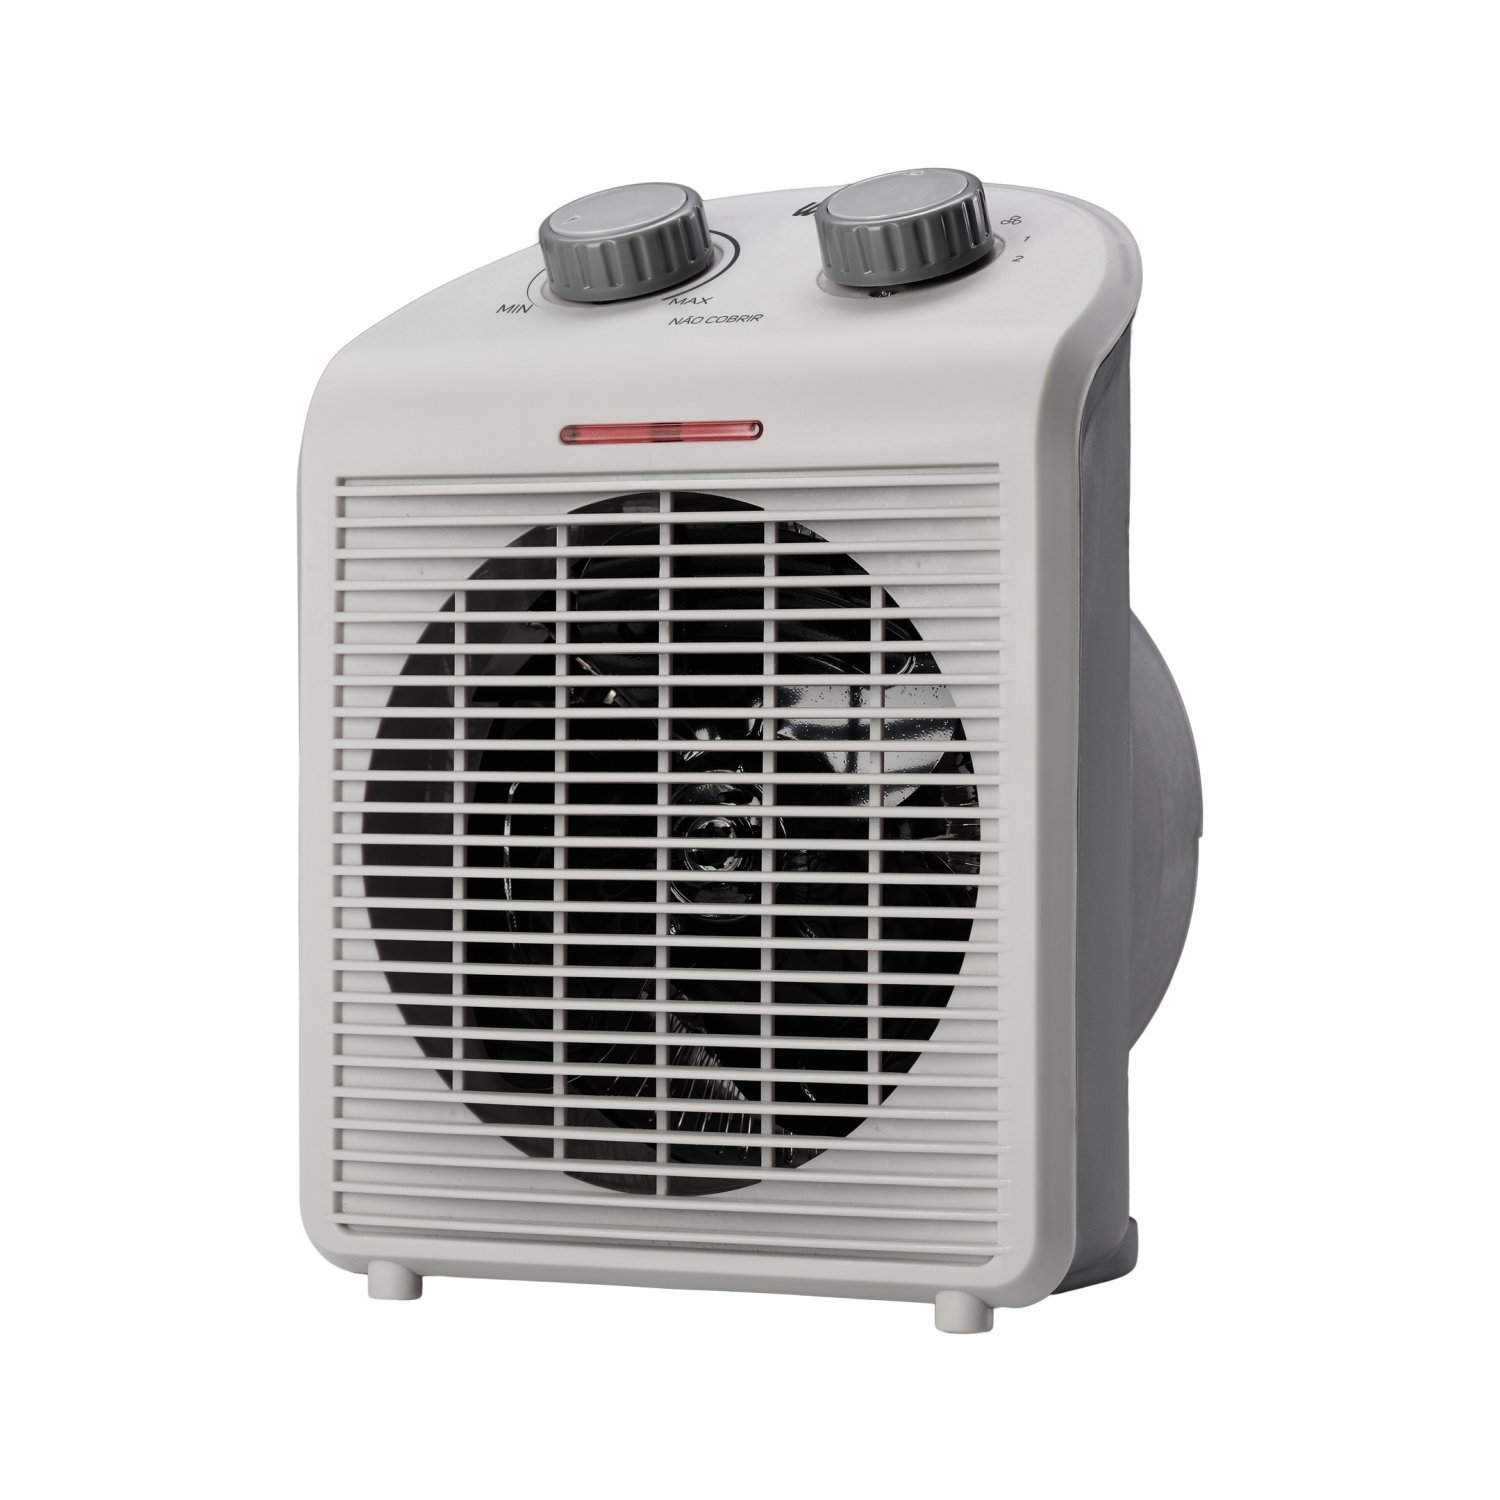 Aquecedor de Ar Portátil Air Heat 3 em 1 1500w 220v WAP Branco - 1